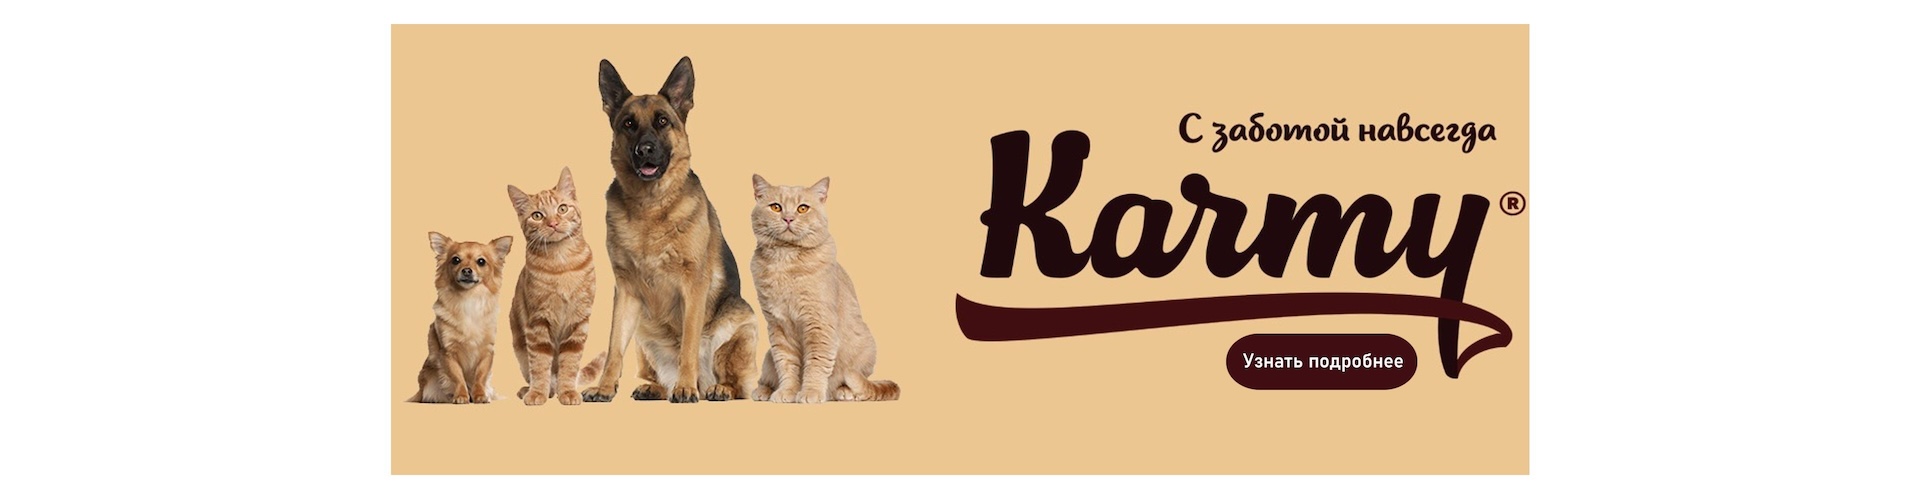 Karmy - сбалансированное питание для собак и кошек